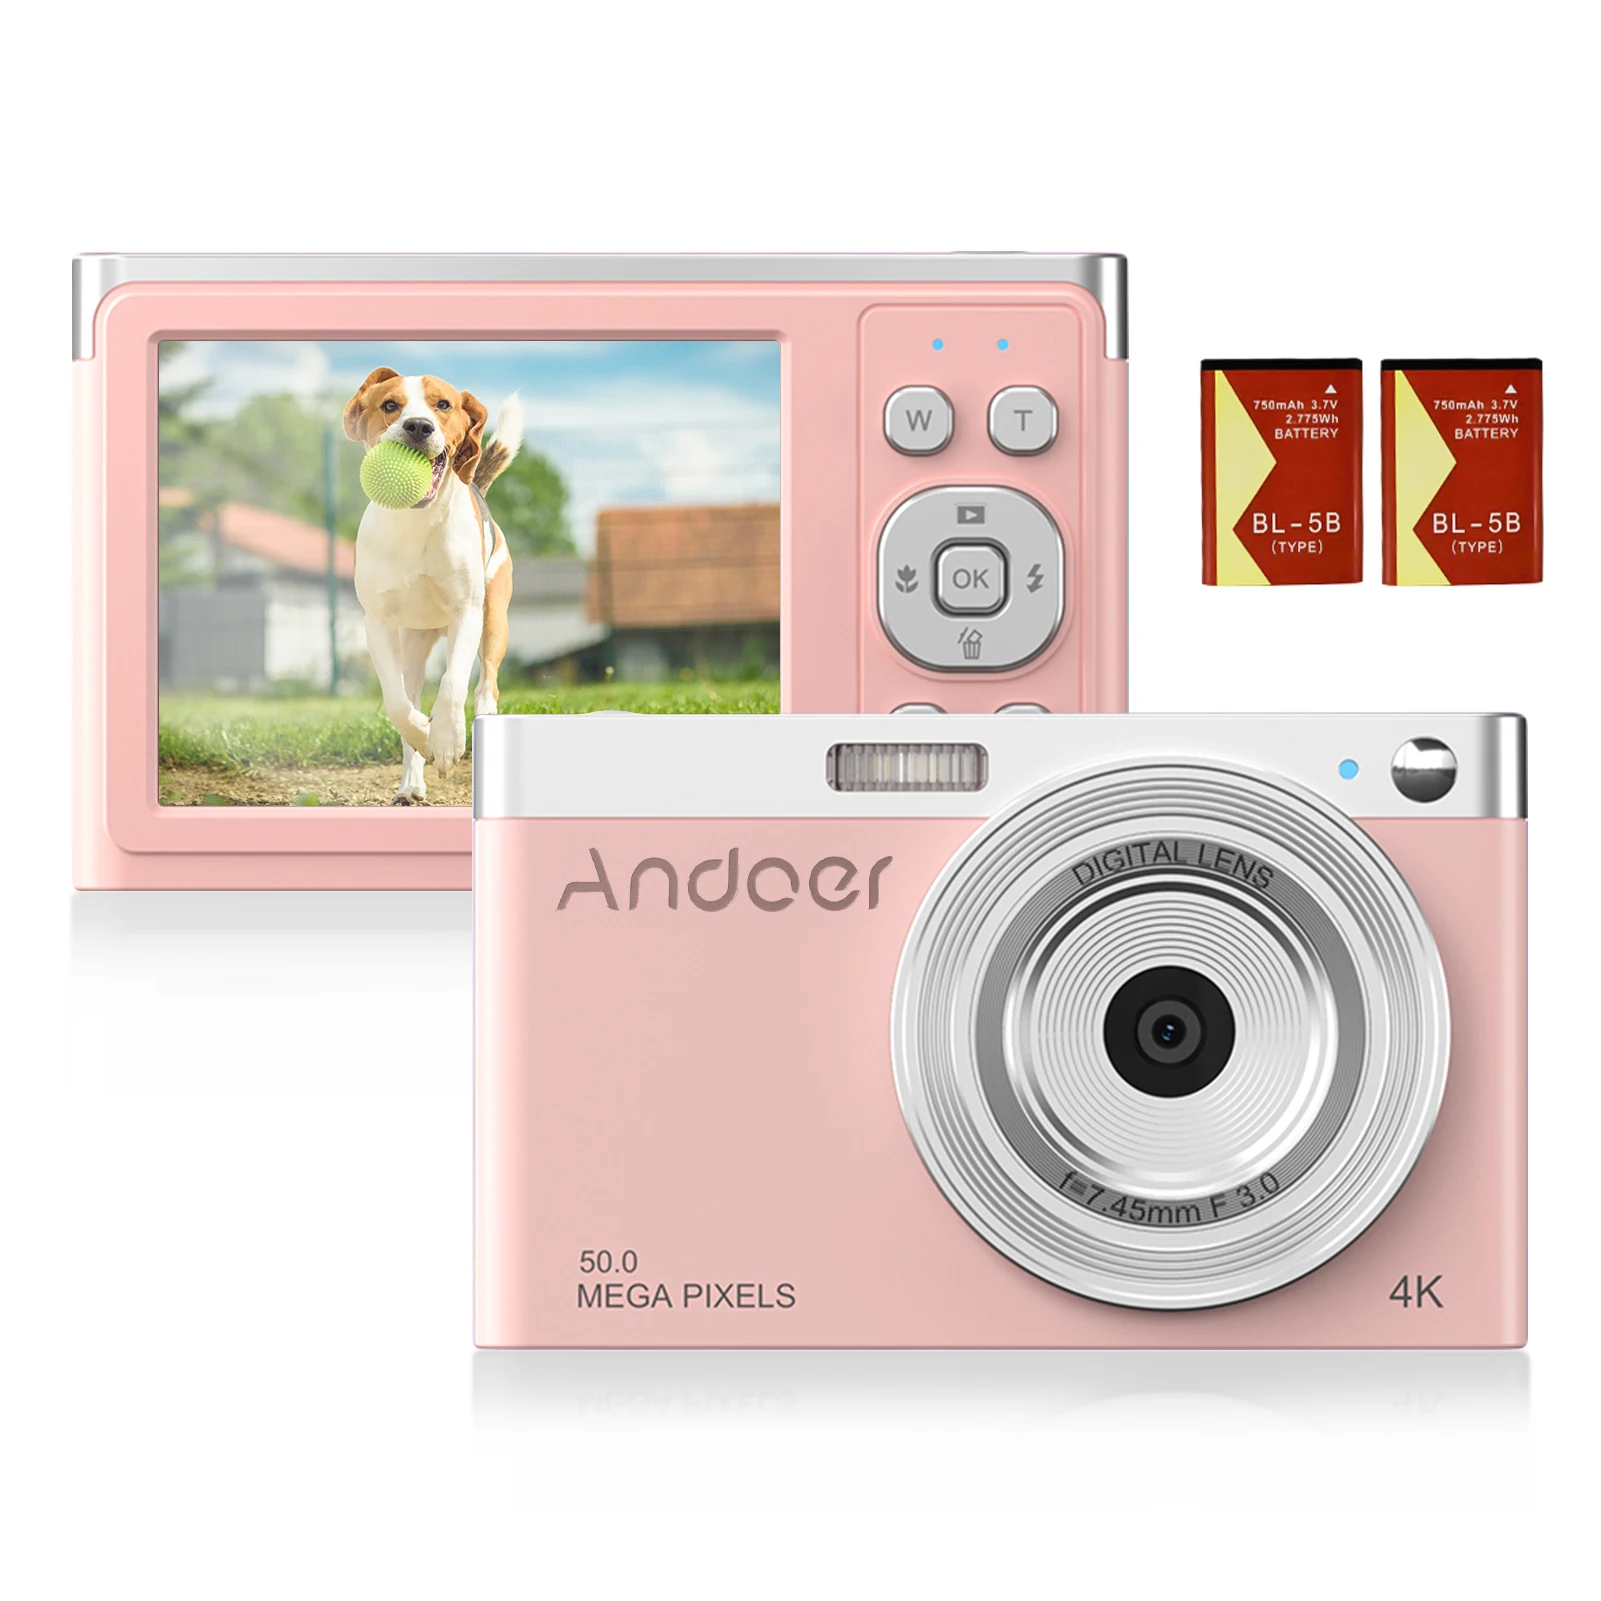 

Цифровая камера Andoer 4K, видеокамера 50 МП, экран 2,88 дюйма IPS, автофокус, распознавание лица, захват улыбки, встроенная вспышка, 2 шт.